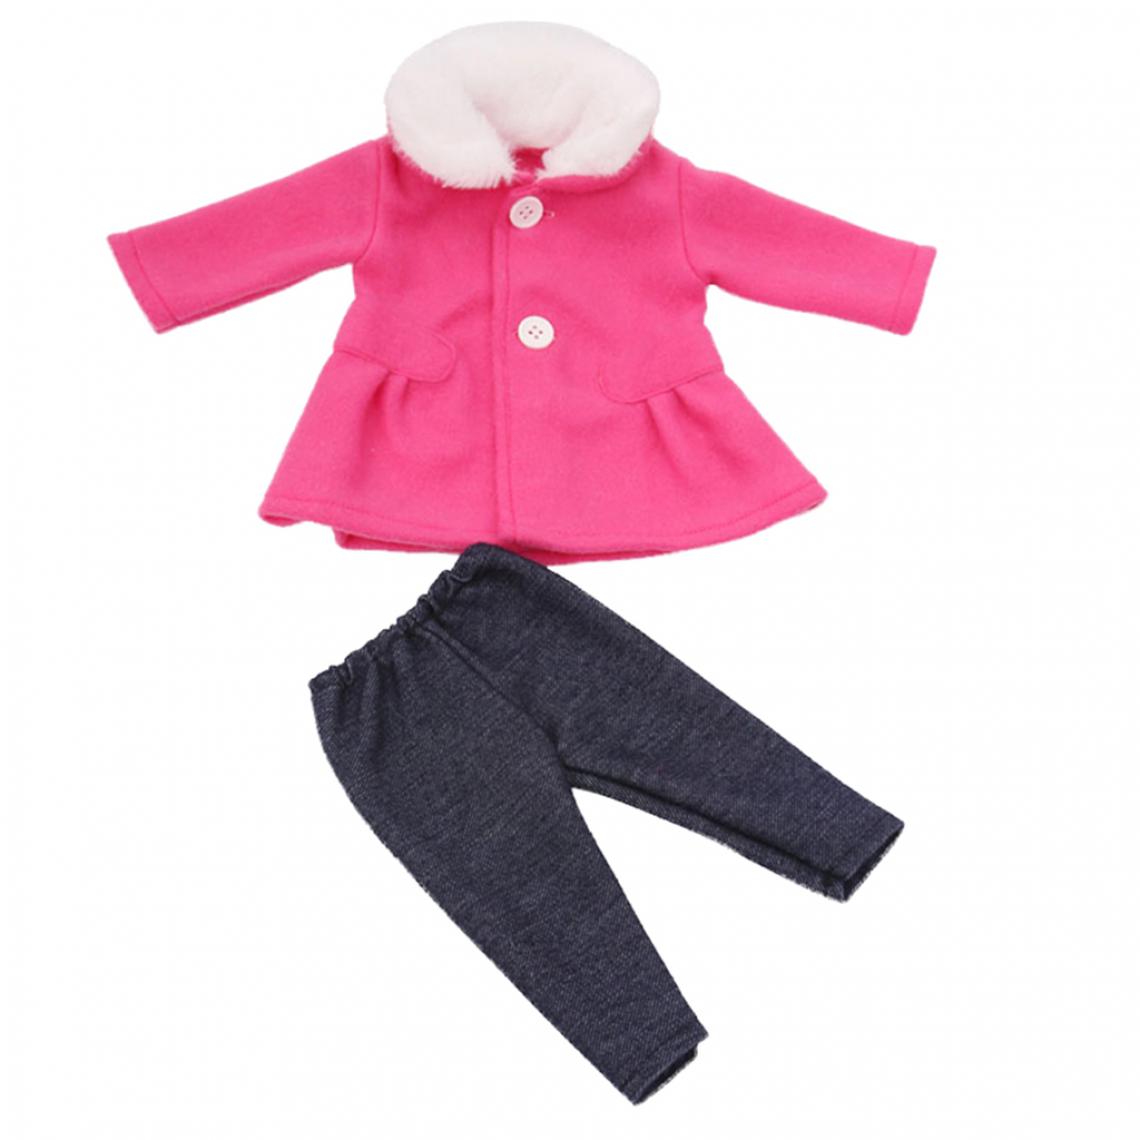 marque generique - 18 pouces fille poupées vêtements pardessus de laine ensemble + accessoires de pantalon rose rouge - Maisons de poupées